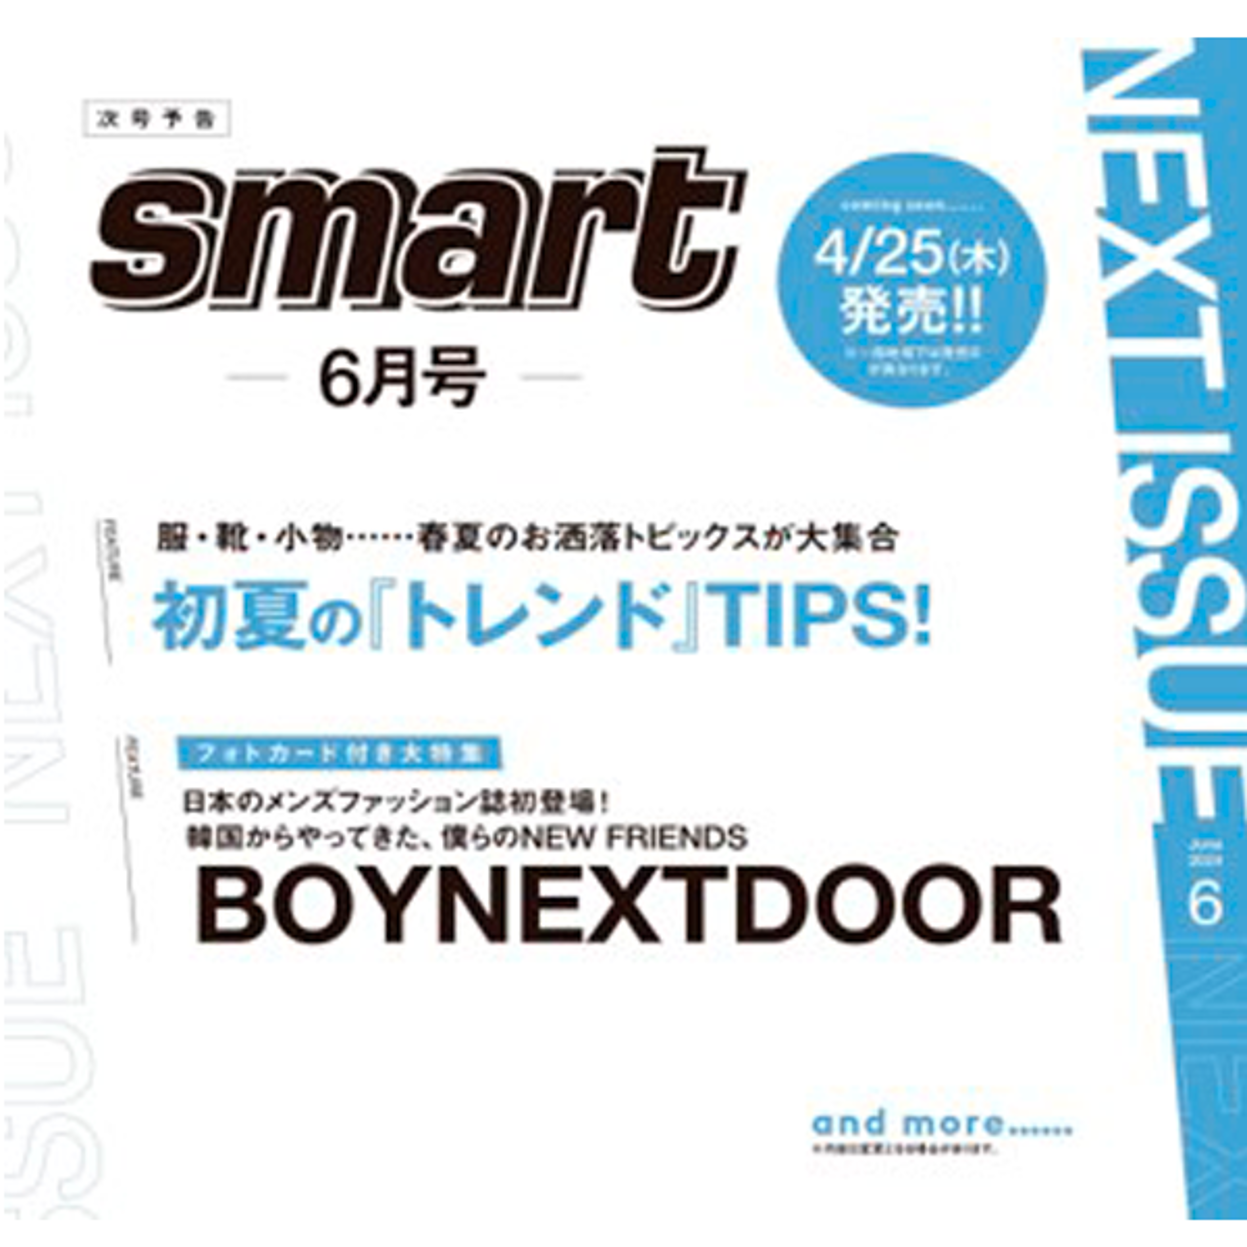 smart 06월호 (표지 : 보이넥스트도어) (일본잡지)